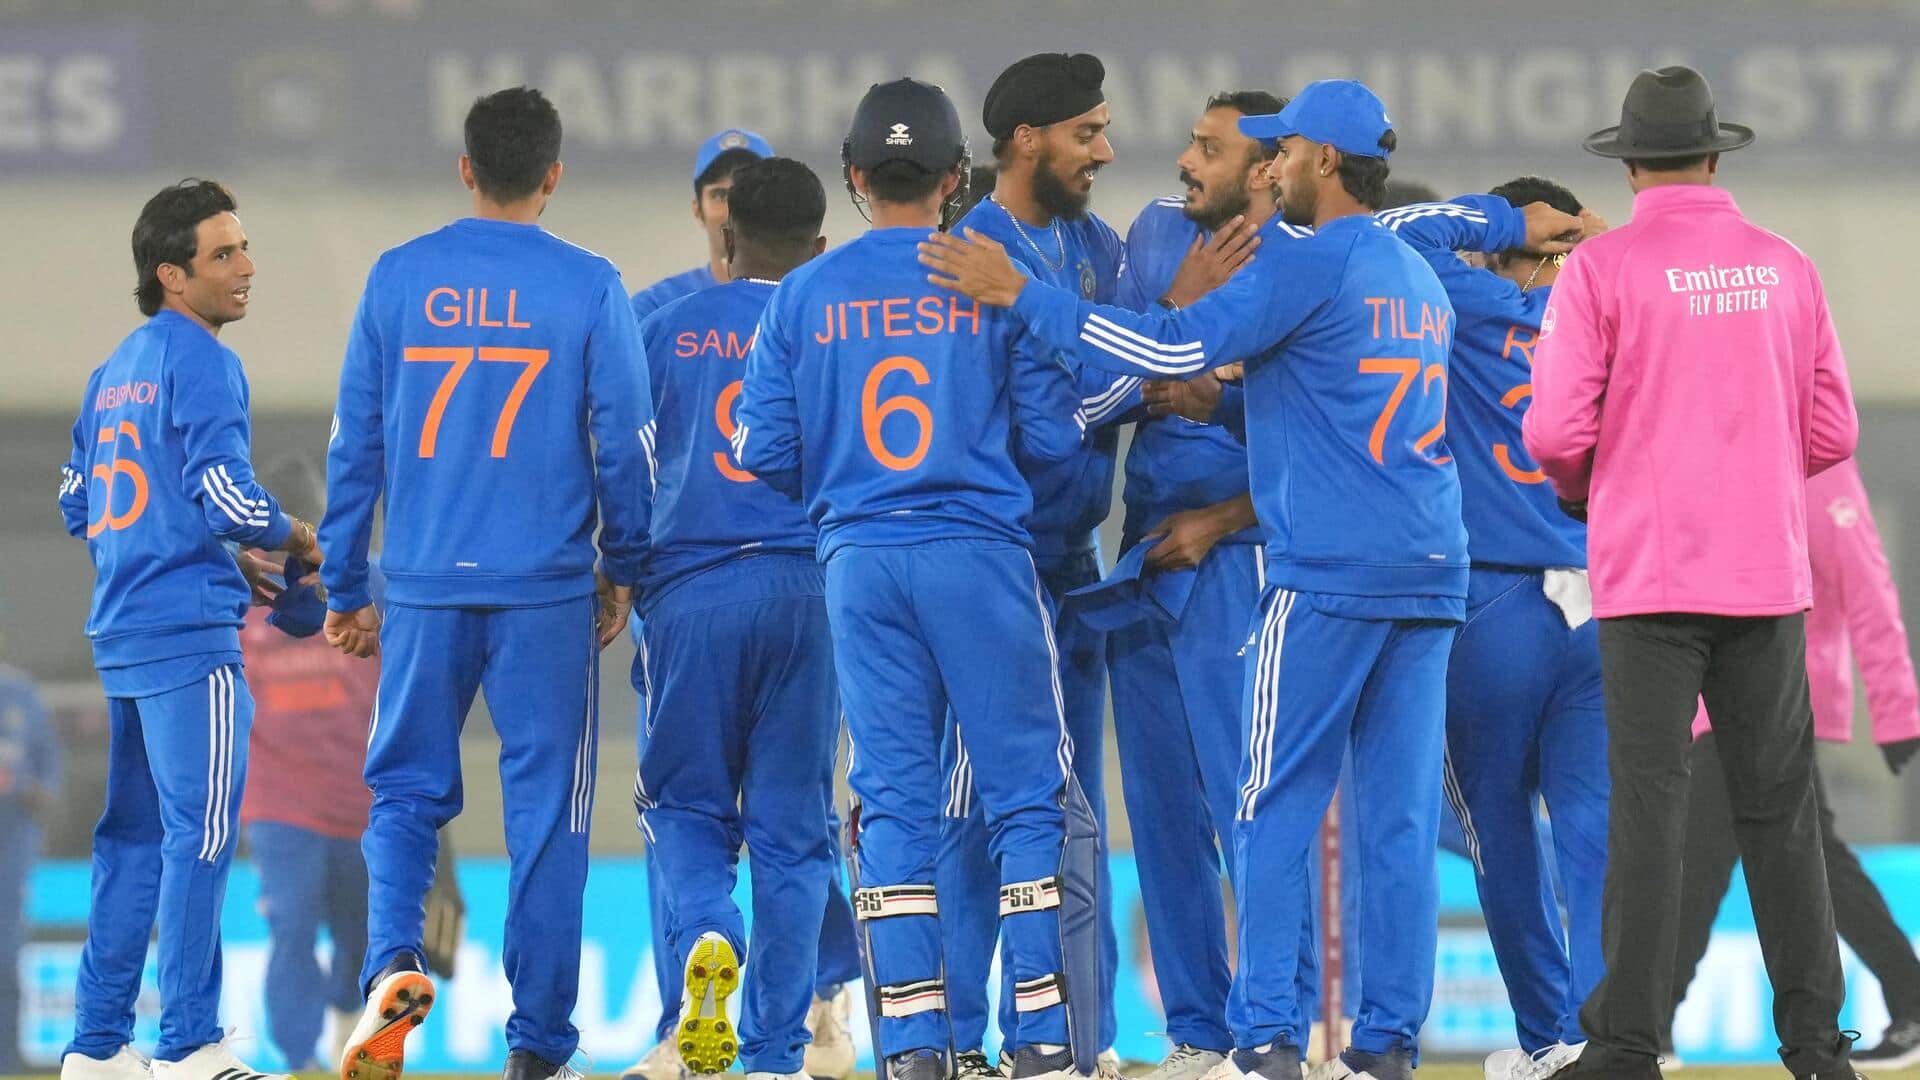 अफगानिस्तान ने भारत के खिलाफ बनाया अपना सर्वोच्च टी-20 अंतरराष्ट्रीय स्कोर, दिया 159 रन का लक्ष्य